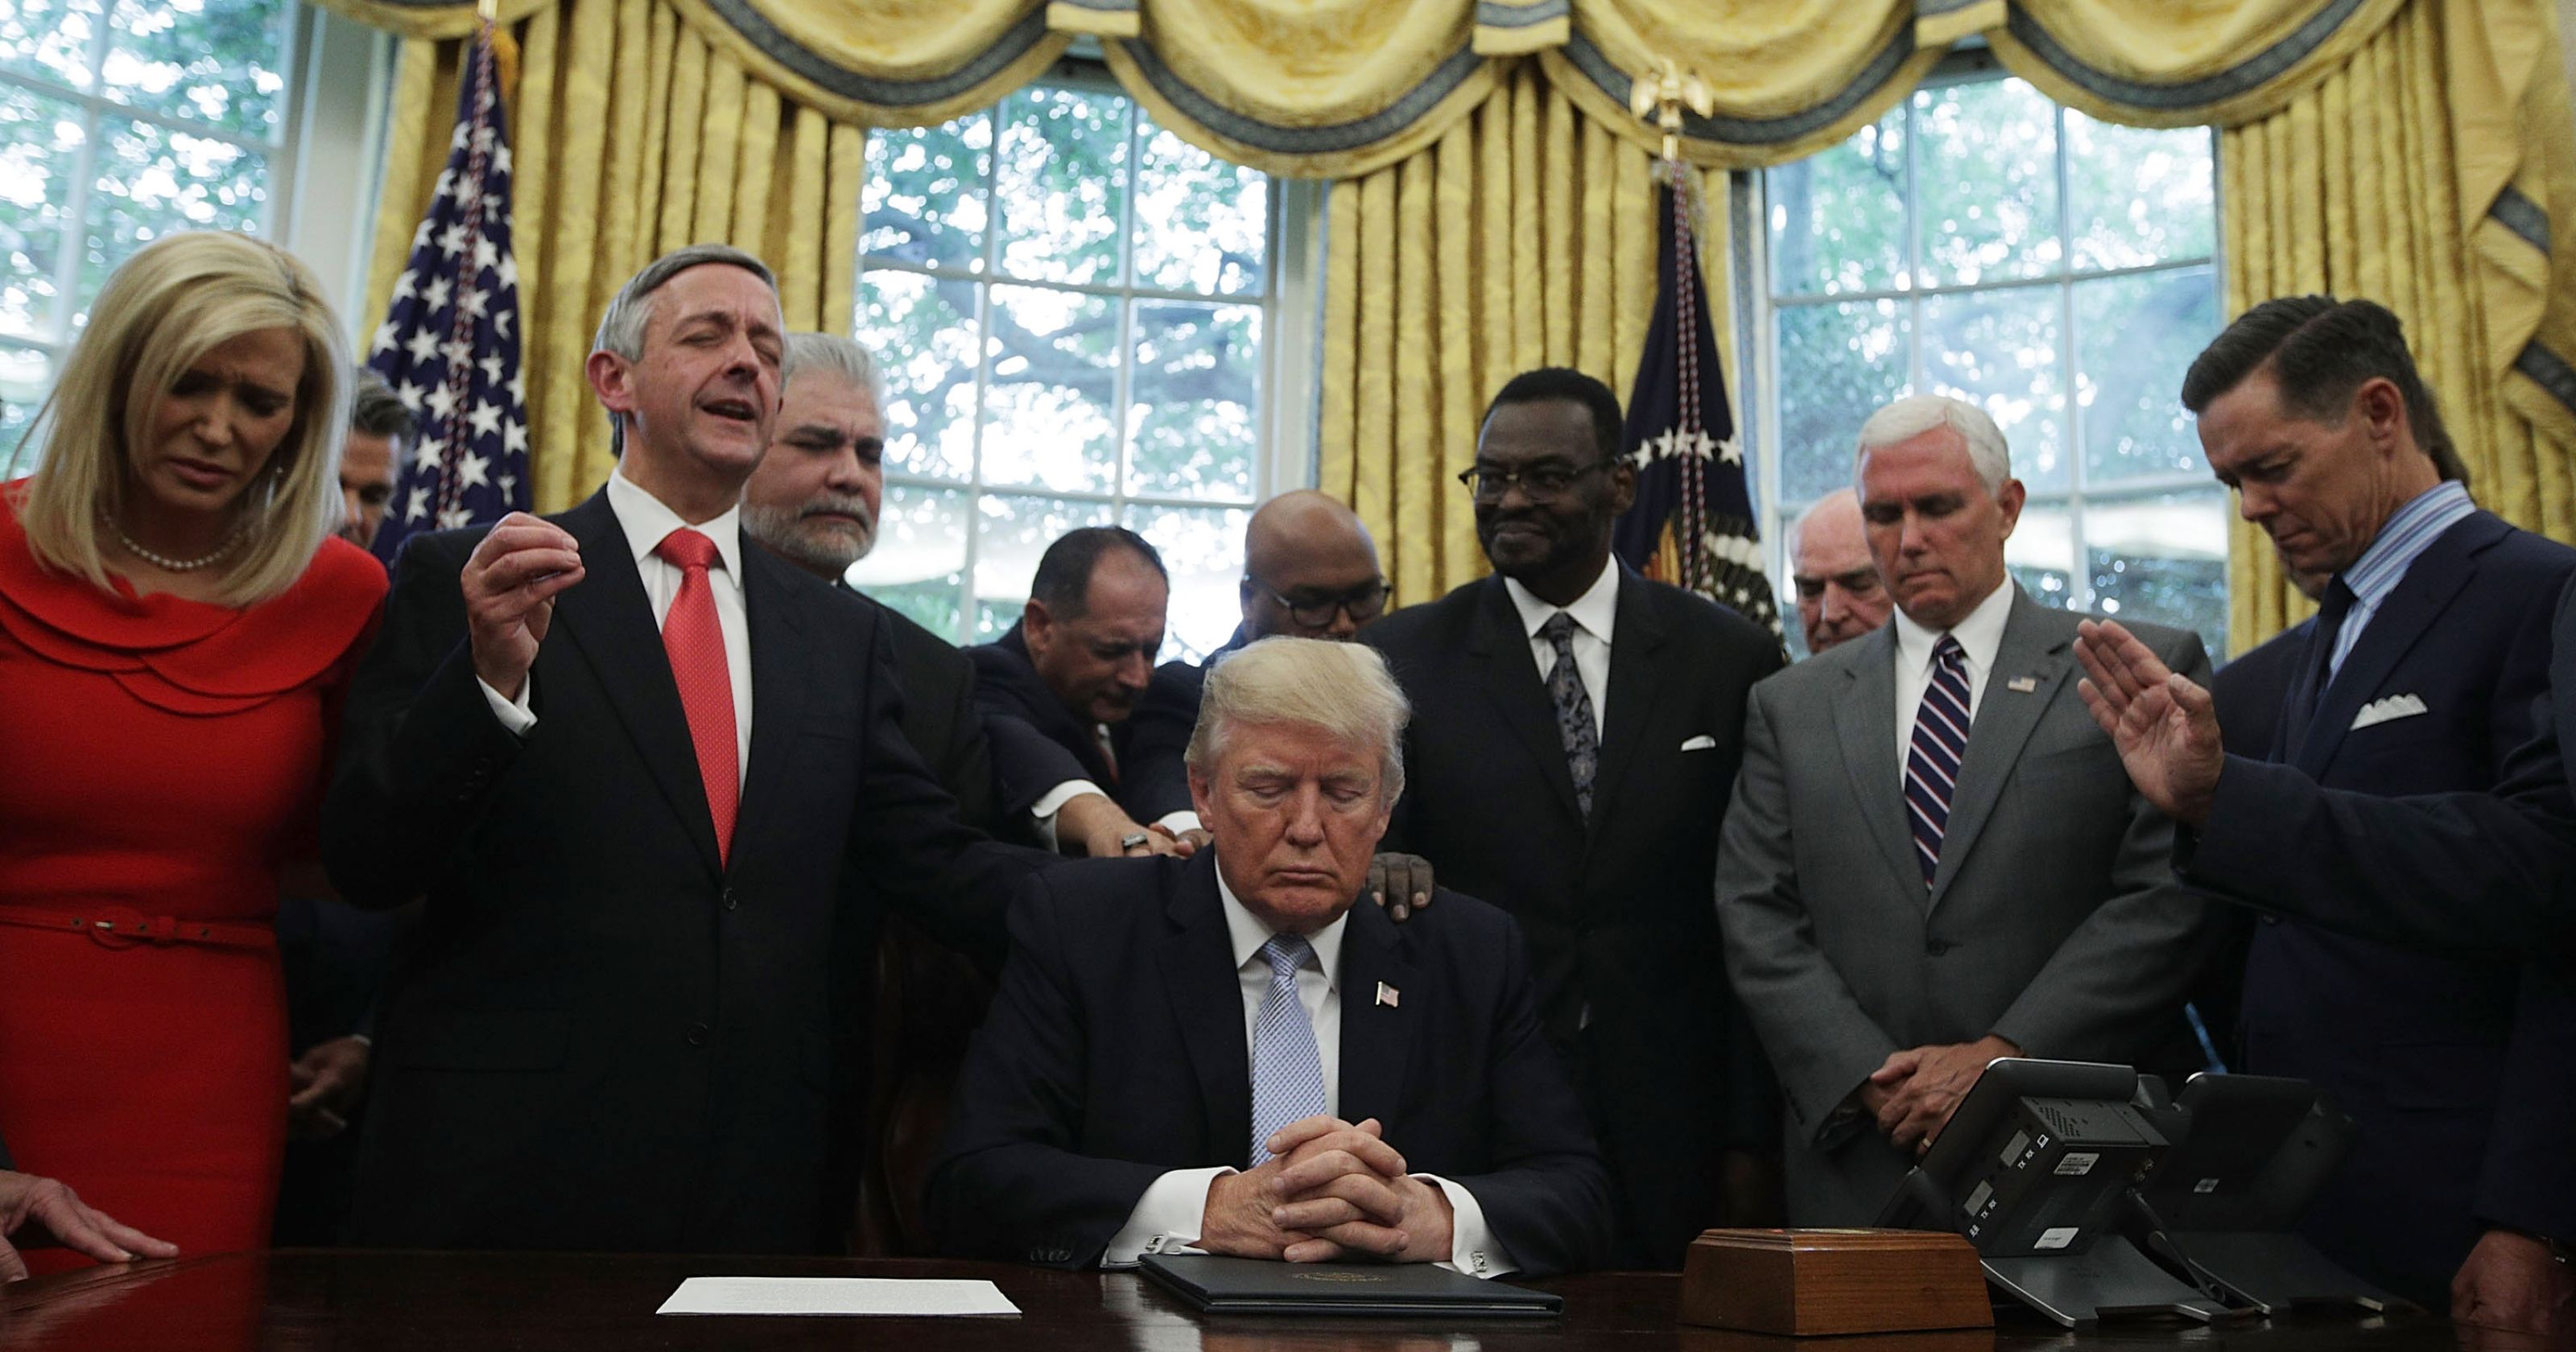 Des leaders chrétiens évangéliques ont prié pour le président Donald Trump afin qu’il soit davantage aimé des Américains.